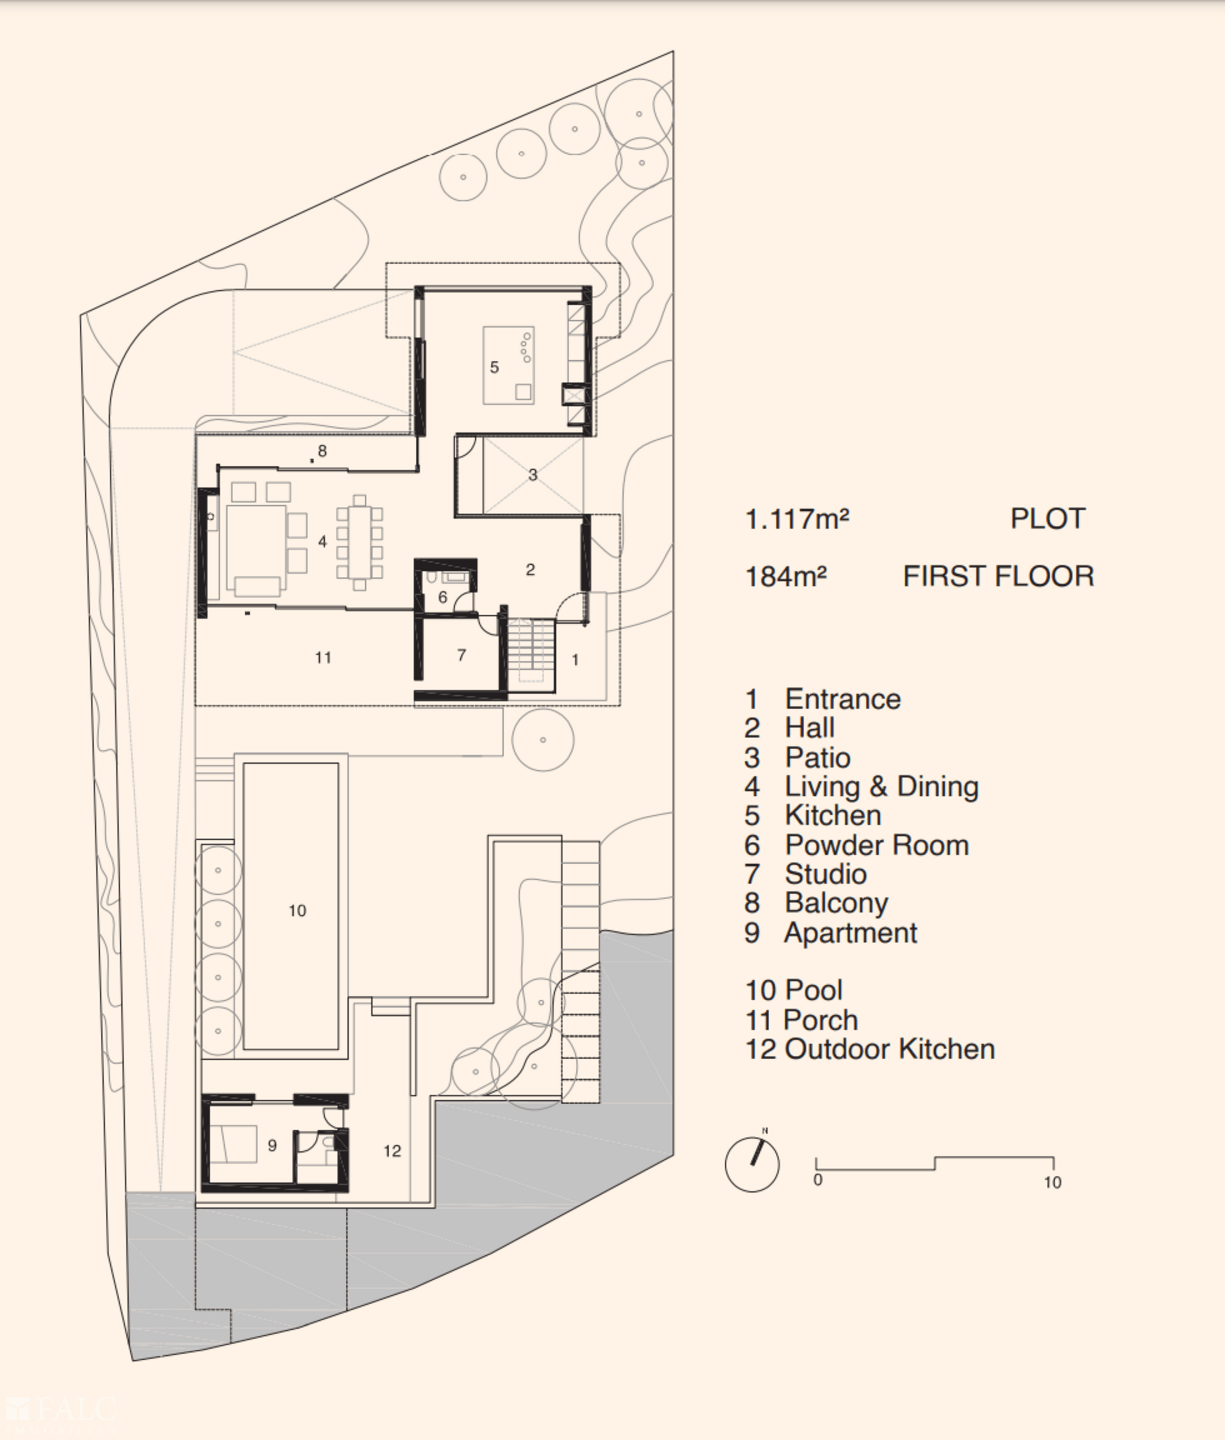 Obergeschoss - First Floor